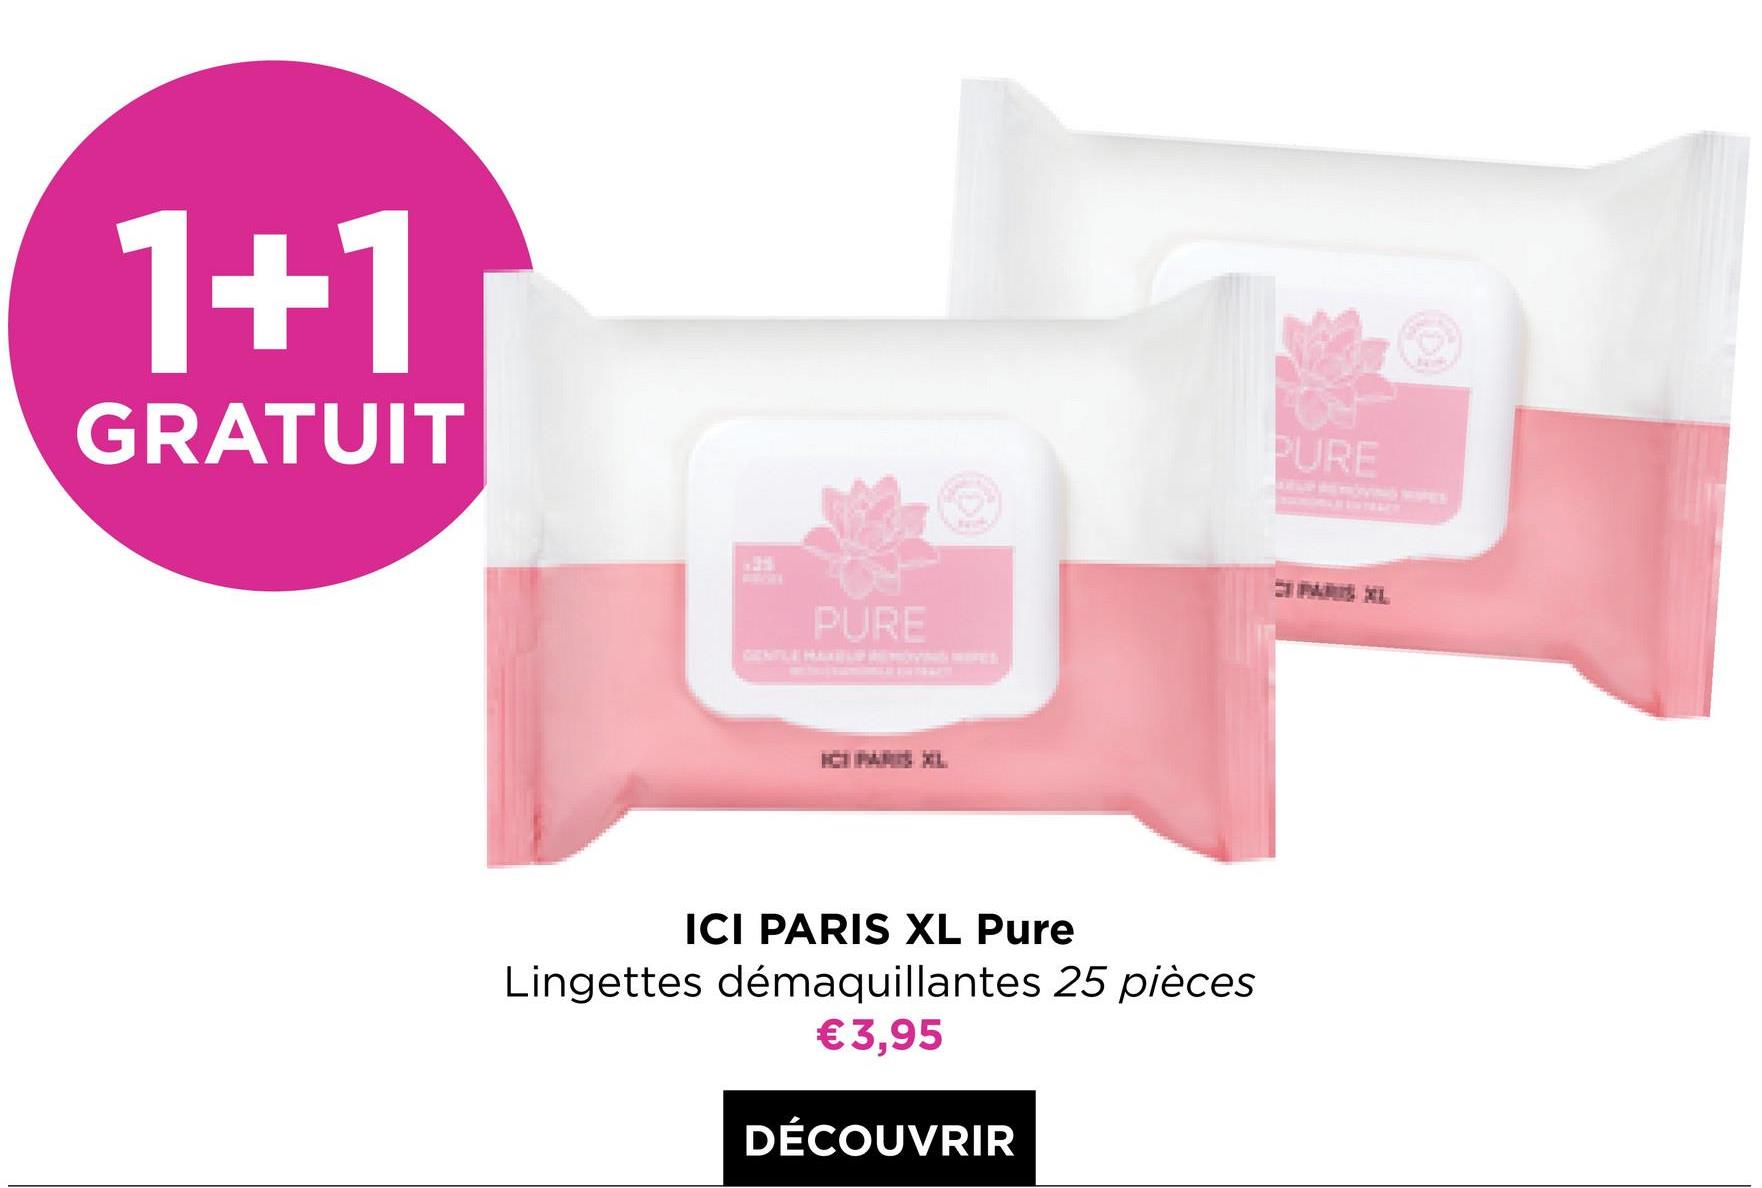 1+1
GRATUIT
PURE
ICI PARIS XL Pure
Lingettes démaquillantes 25 pièces
€3,95
DÉCOUVRIR
PURE
MAXL